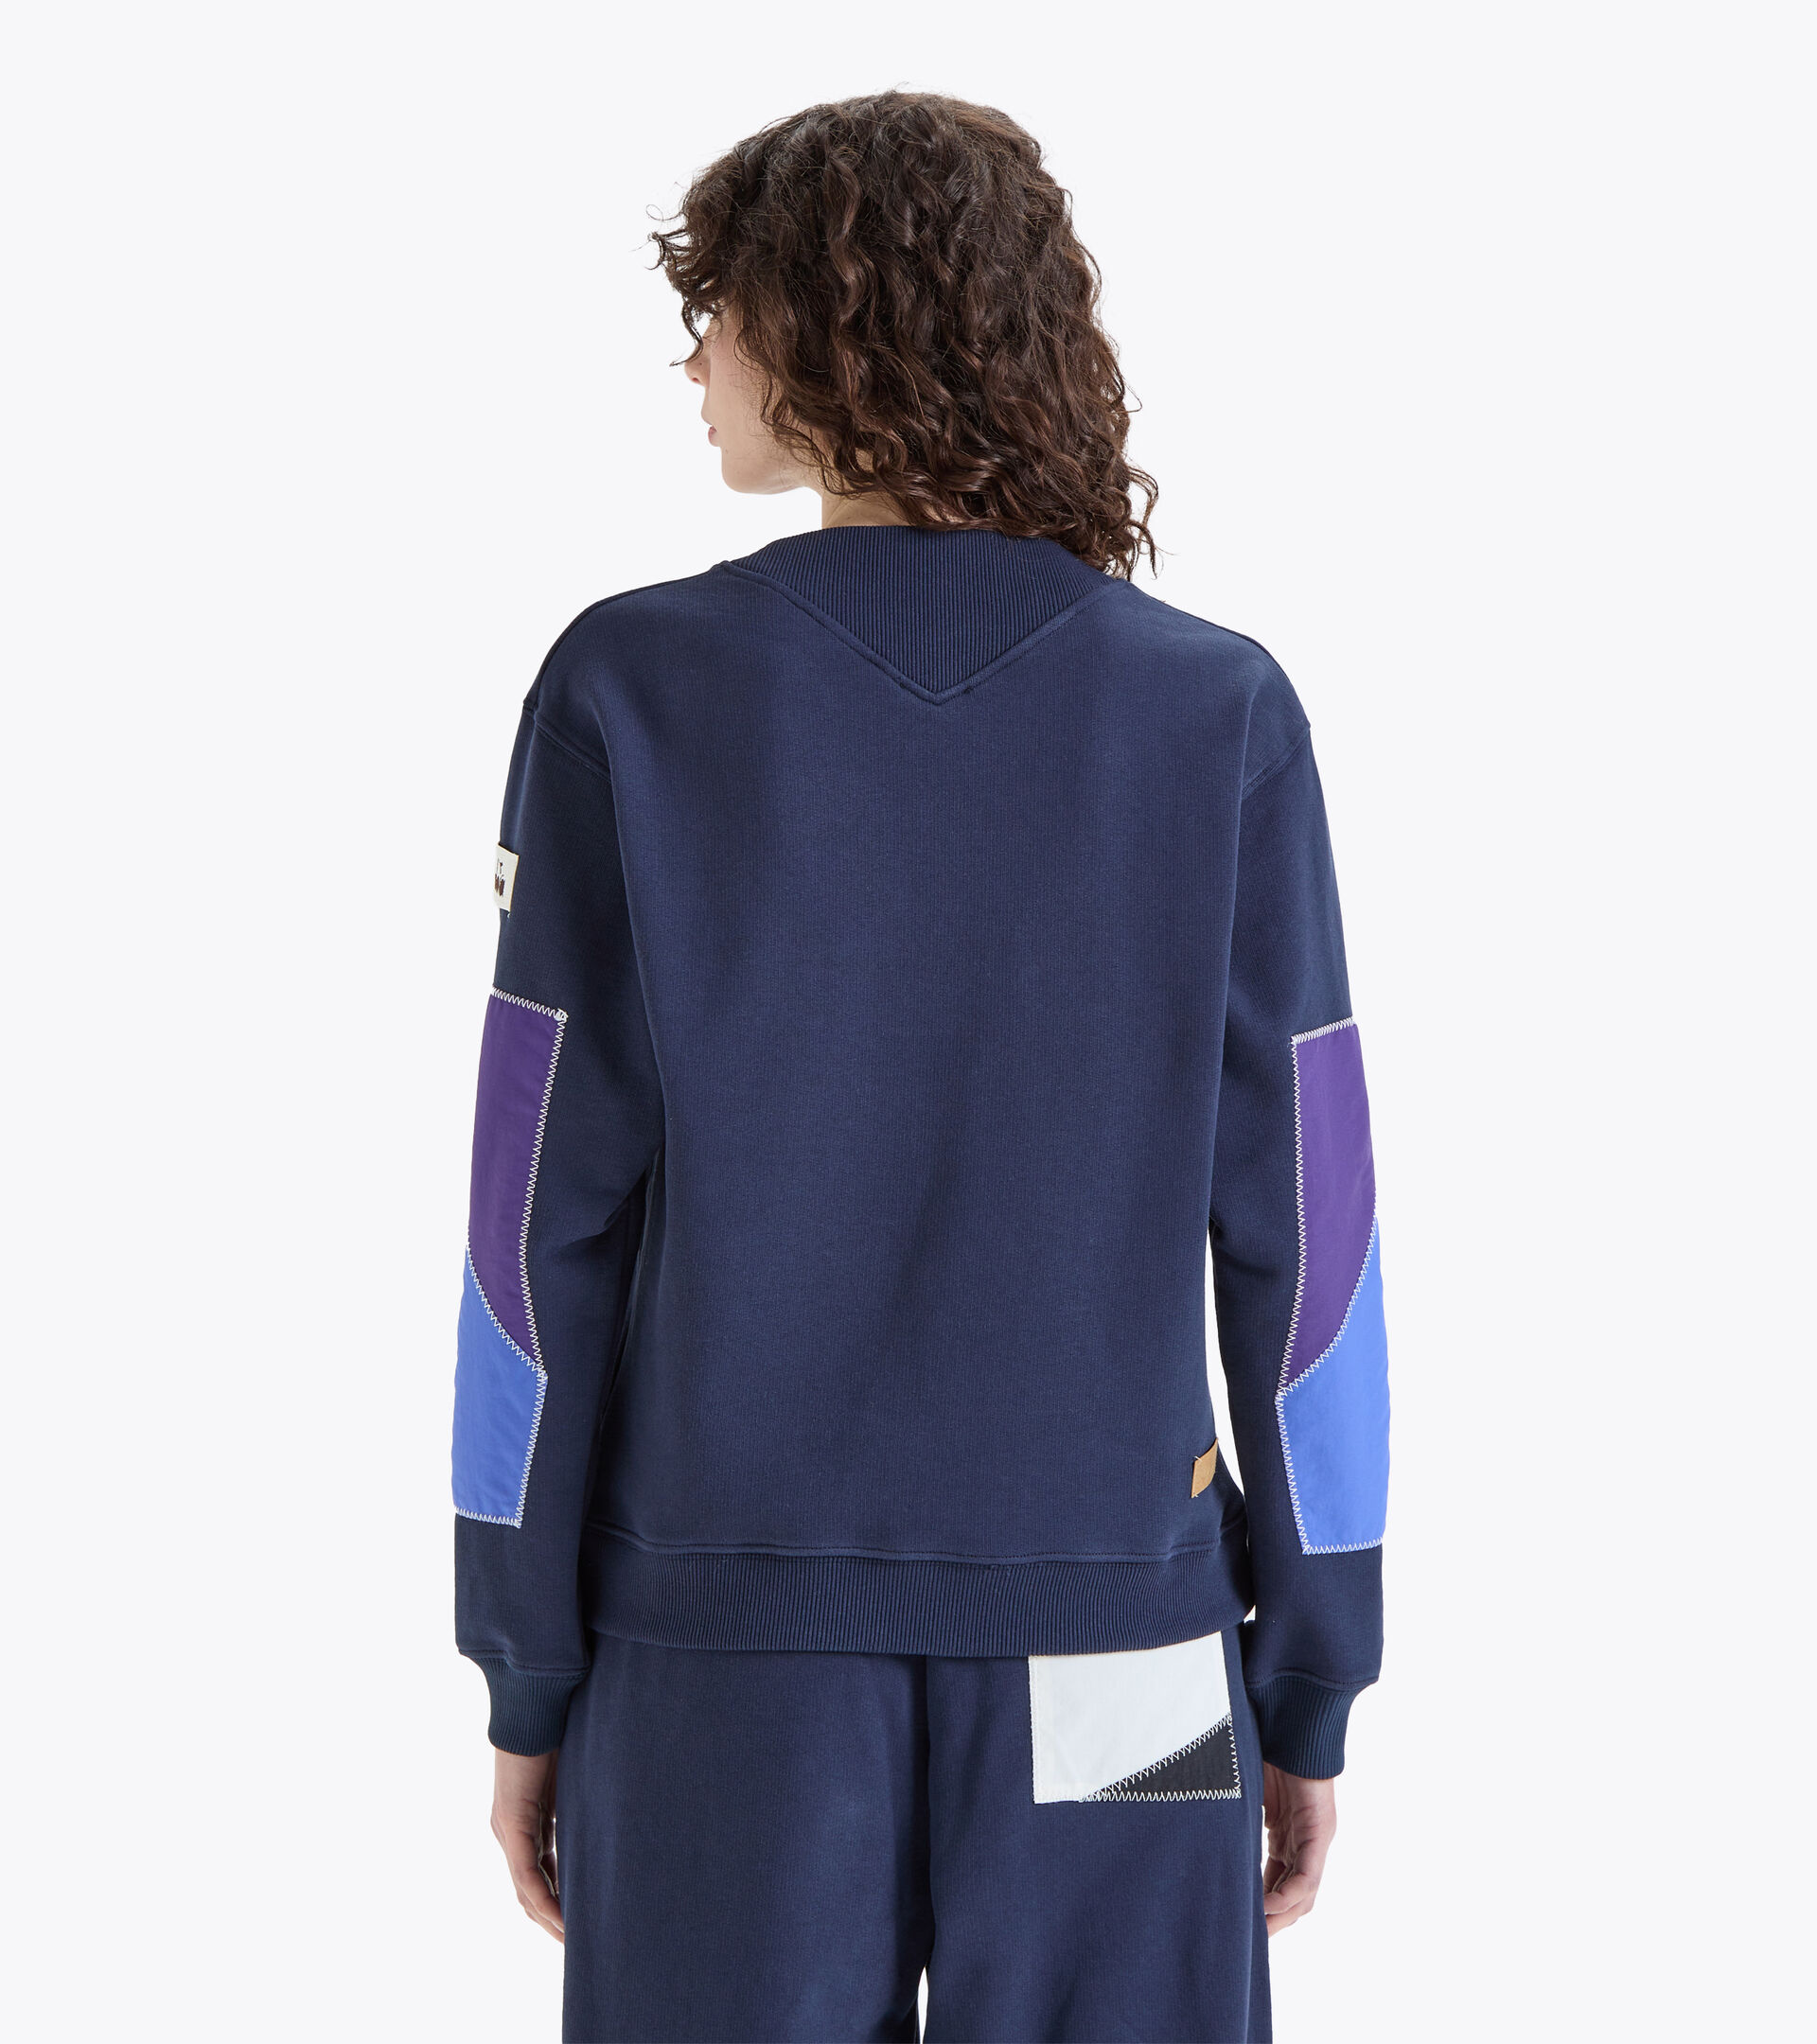 Sweatshirt Made in Italy 2030 - Damen L. SWEATSHIRT CREW 2030 SCHWARZ SCHWERTLILIE - Diadora